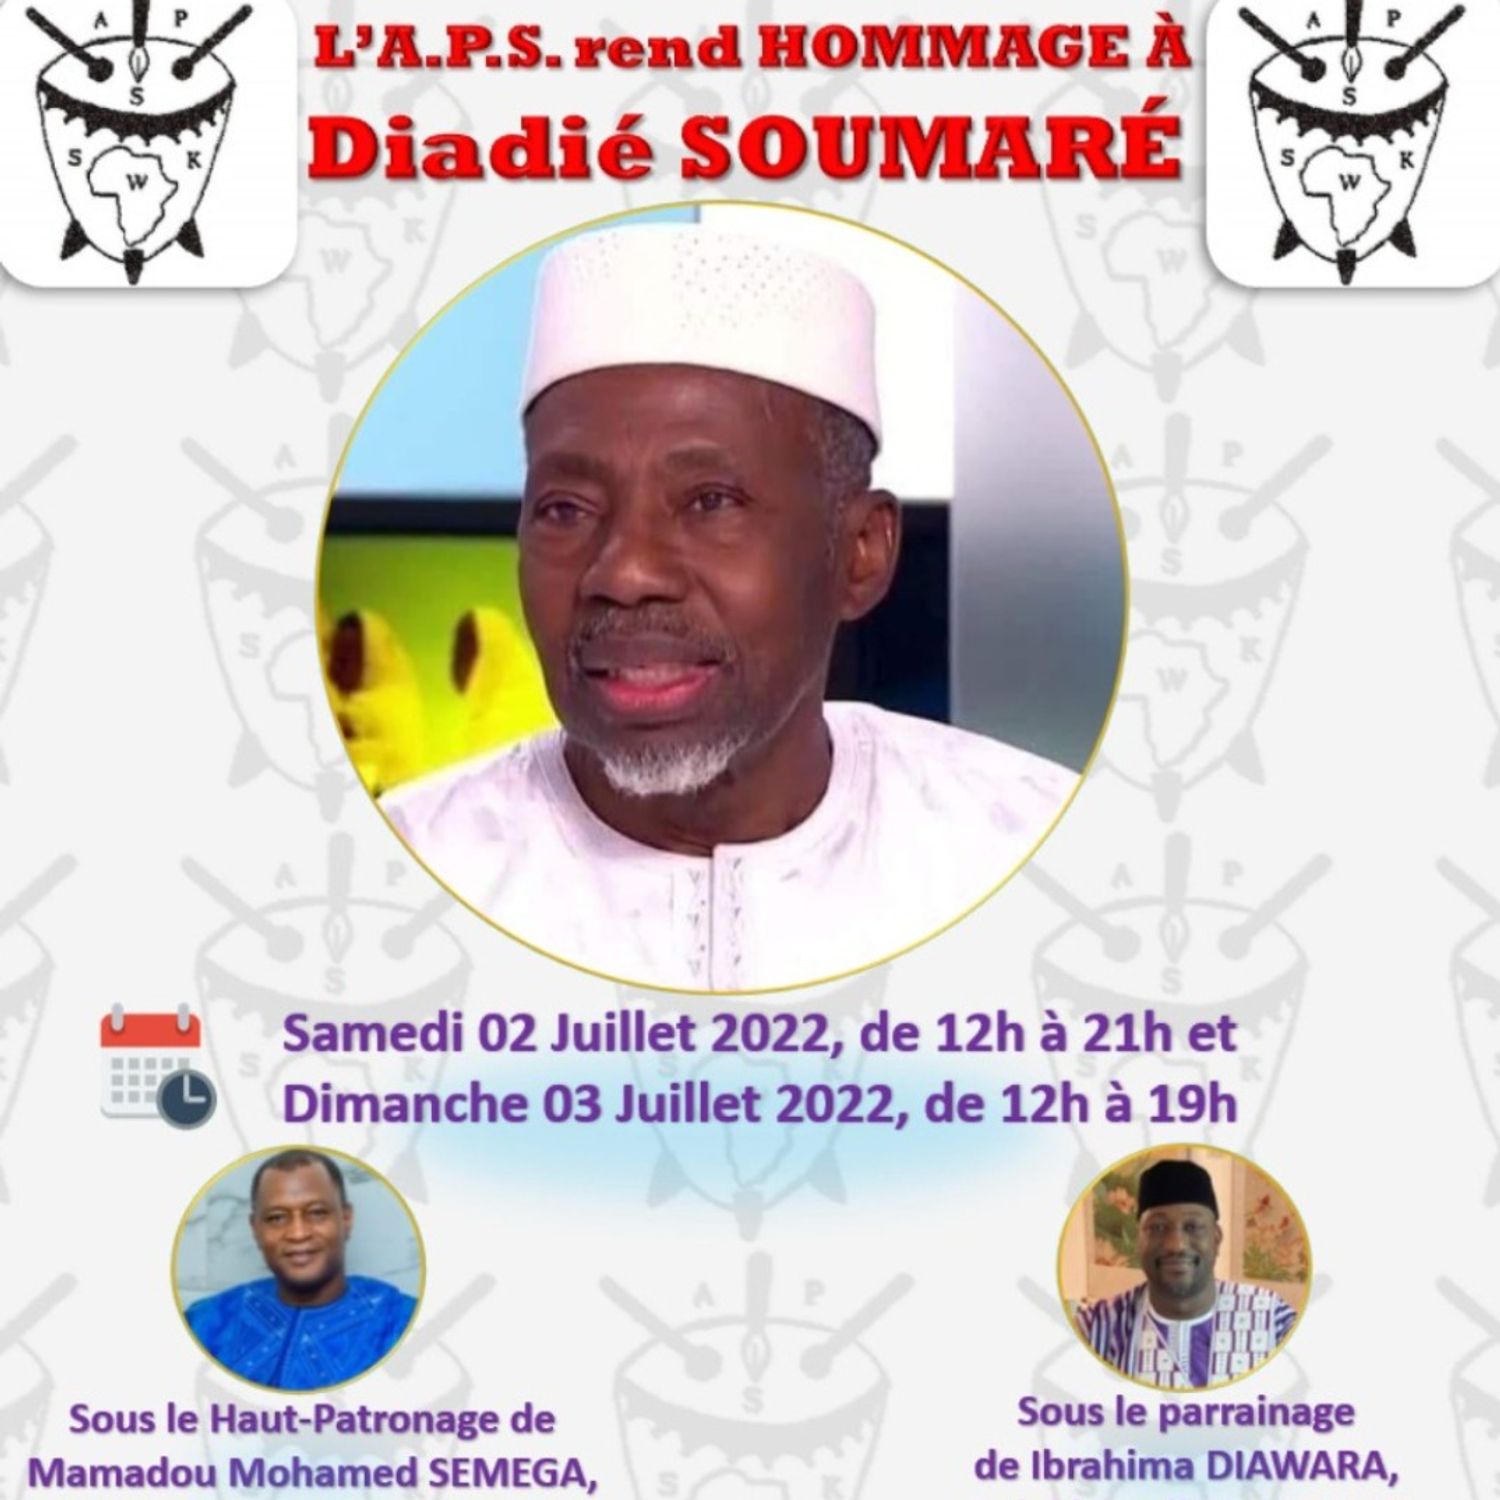 L'APS rend hommage à Diadié Soumaré 